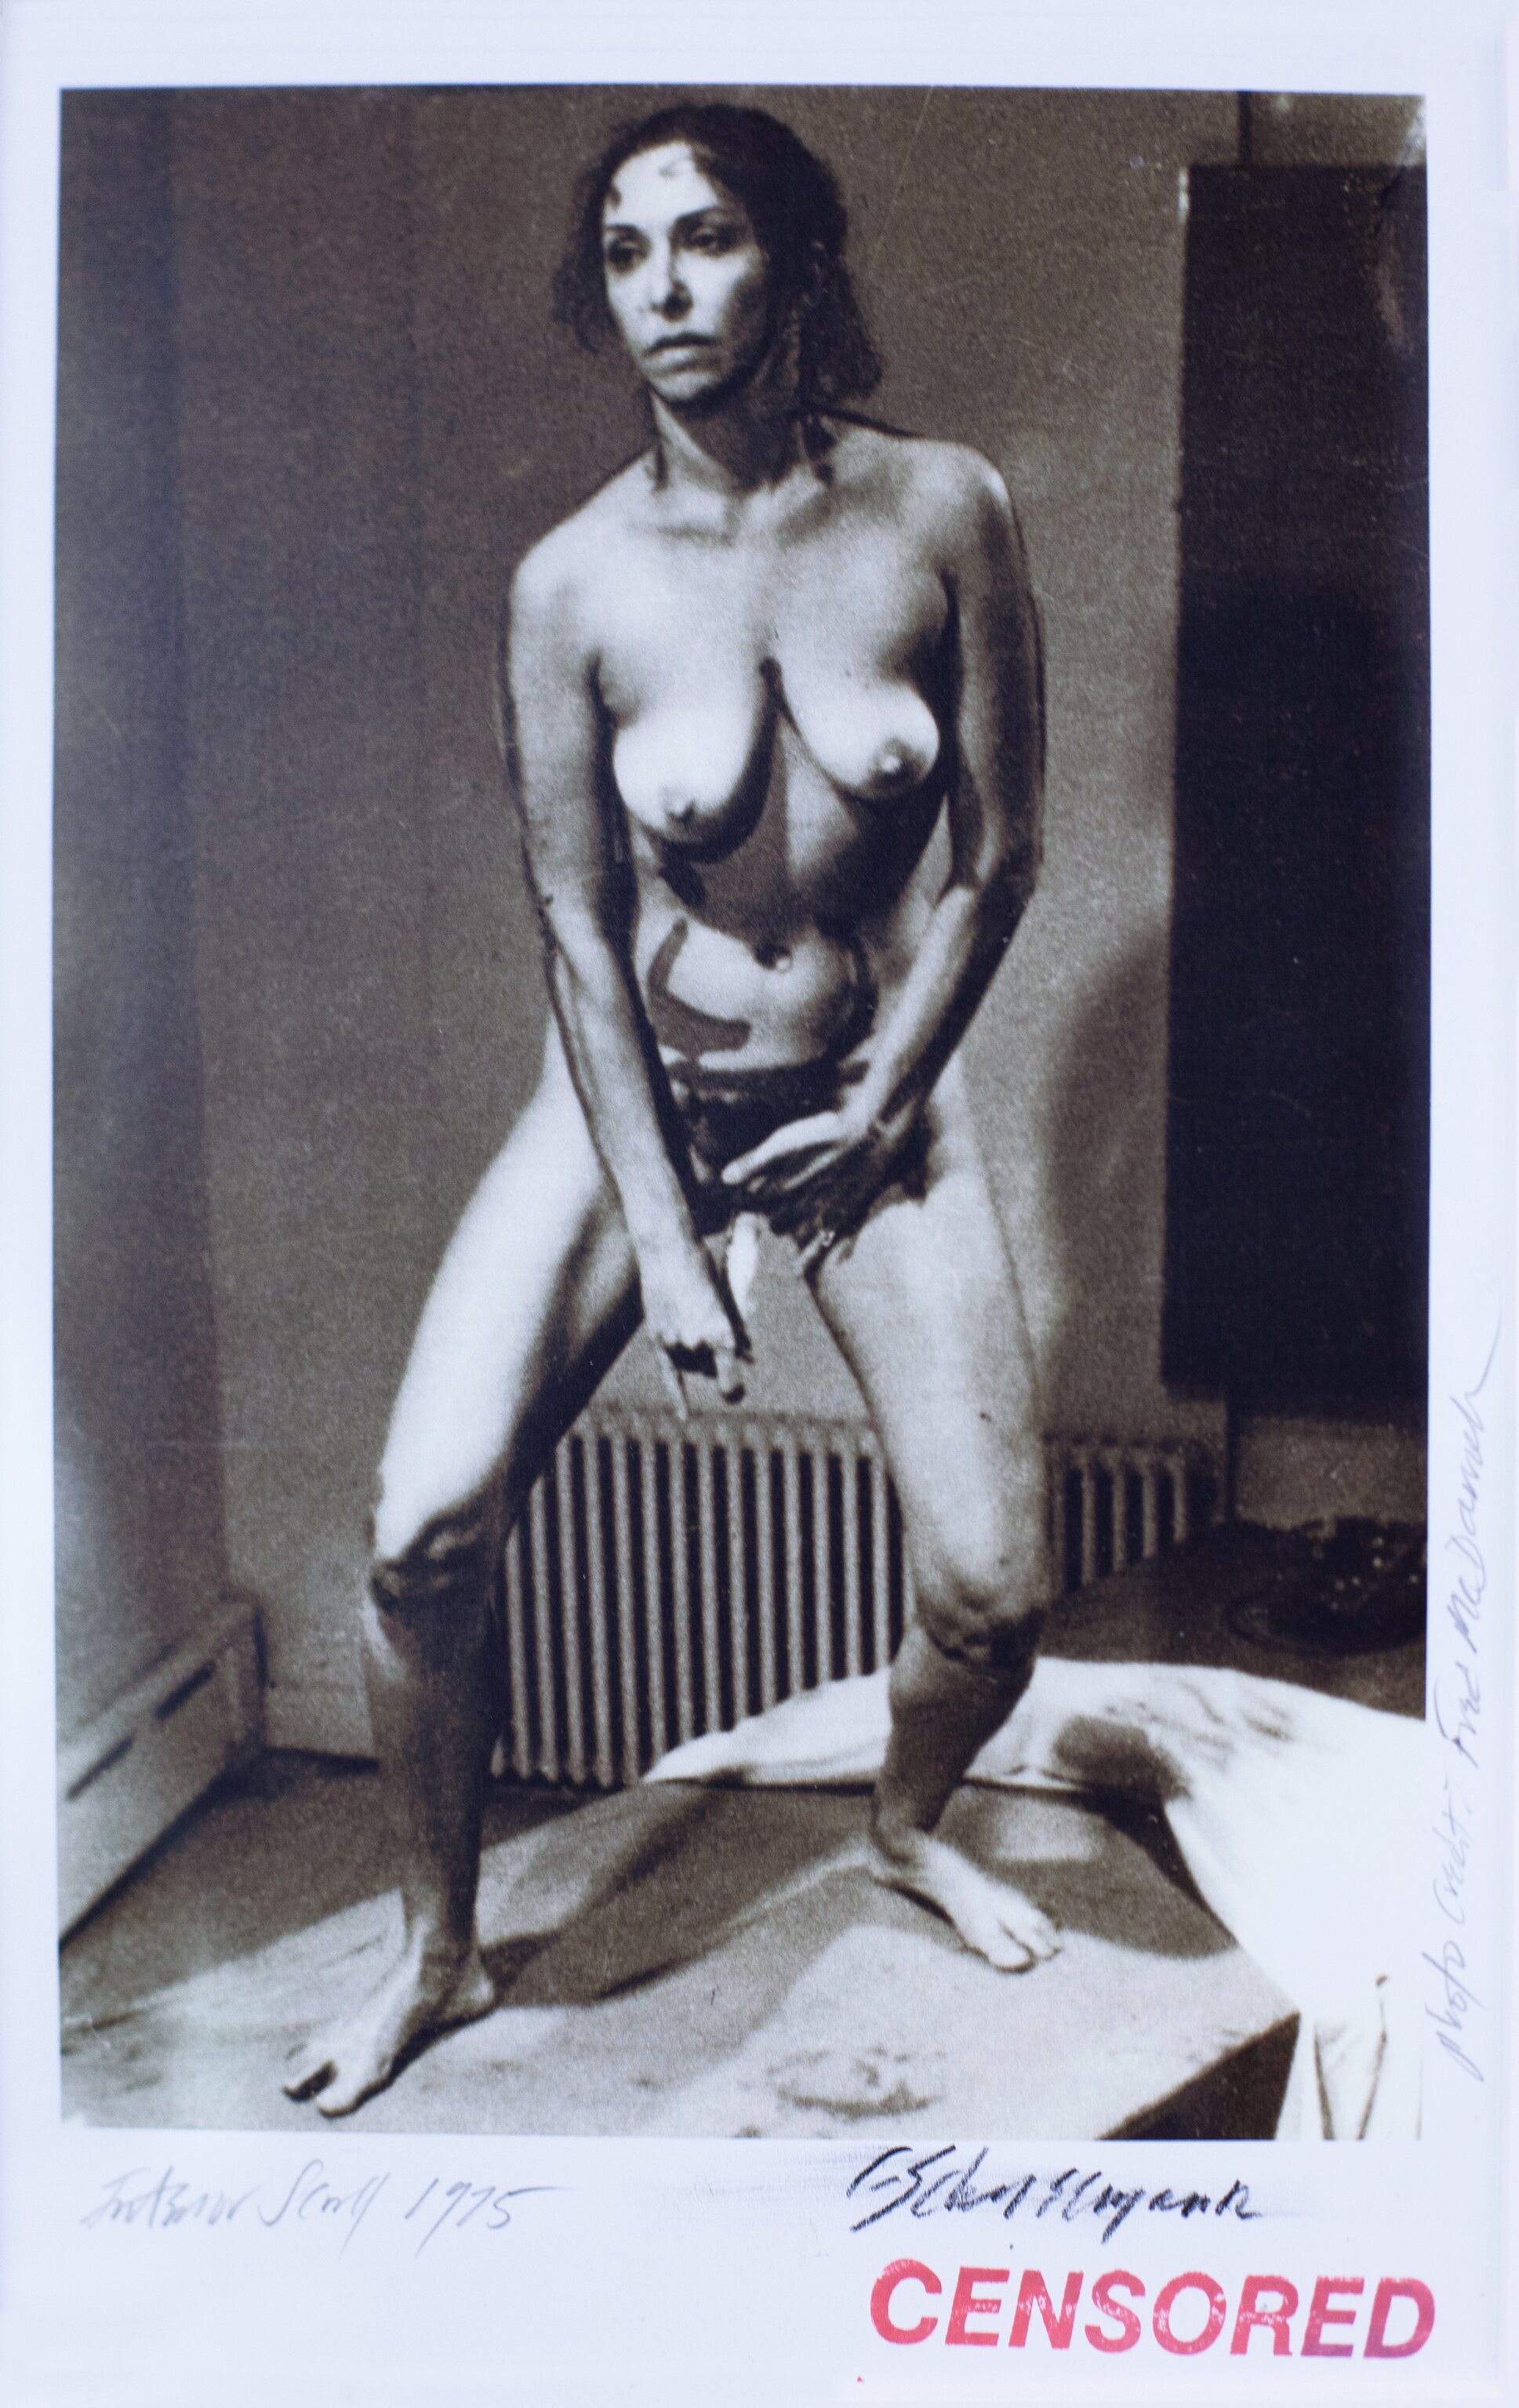 Carolee Schneemann, Interior Scroll, 1975